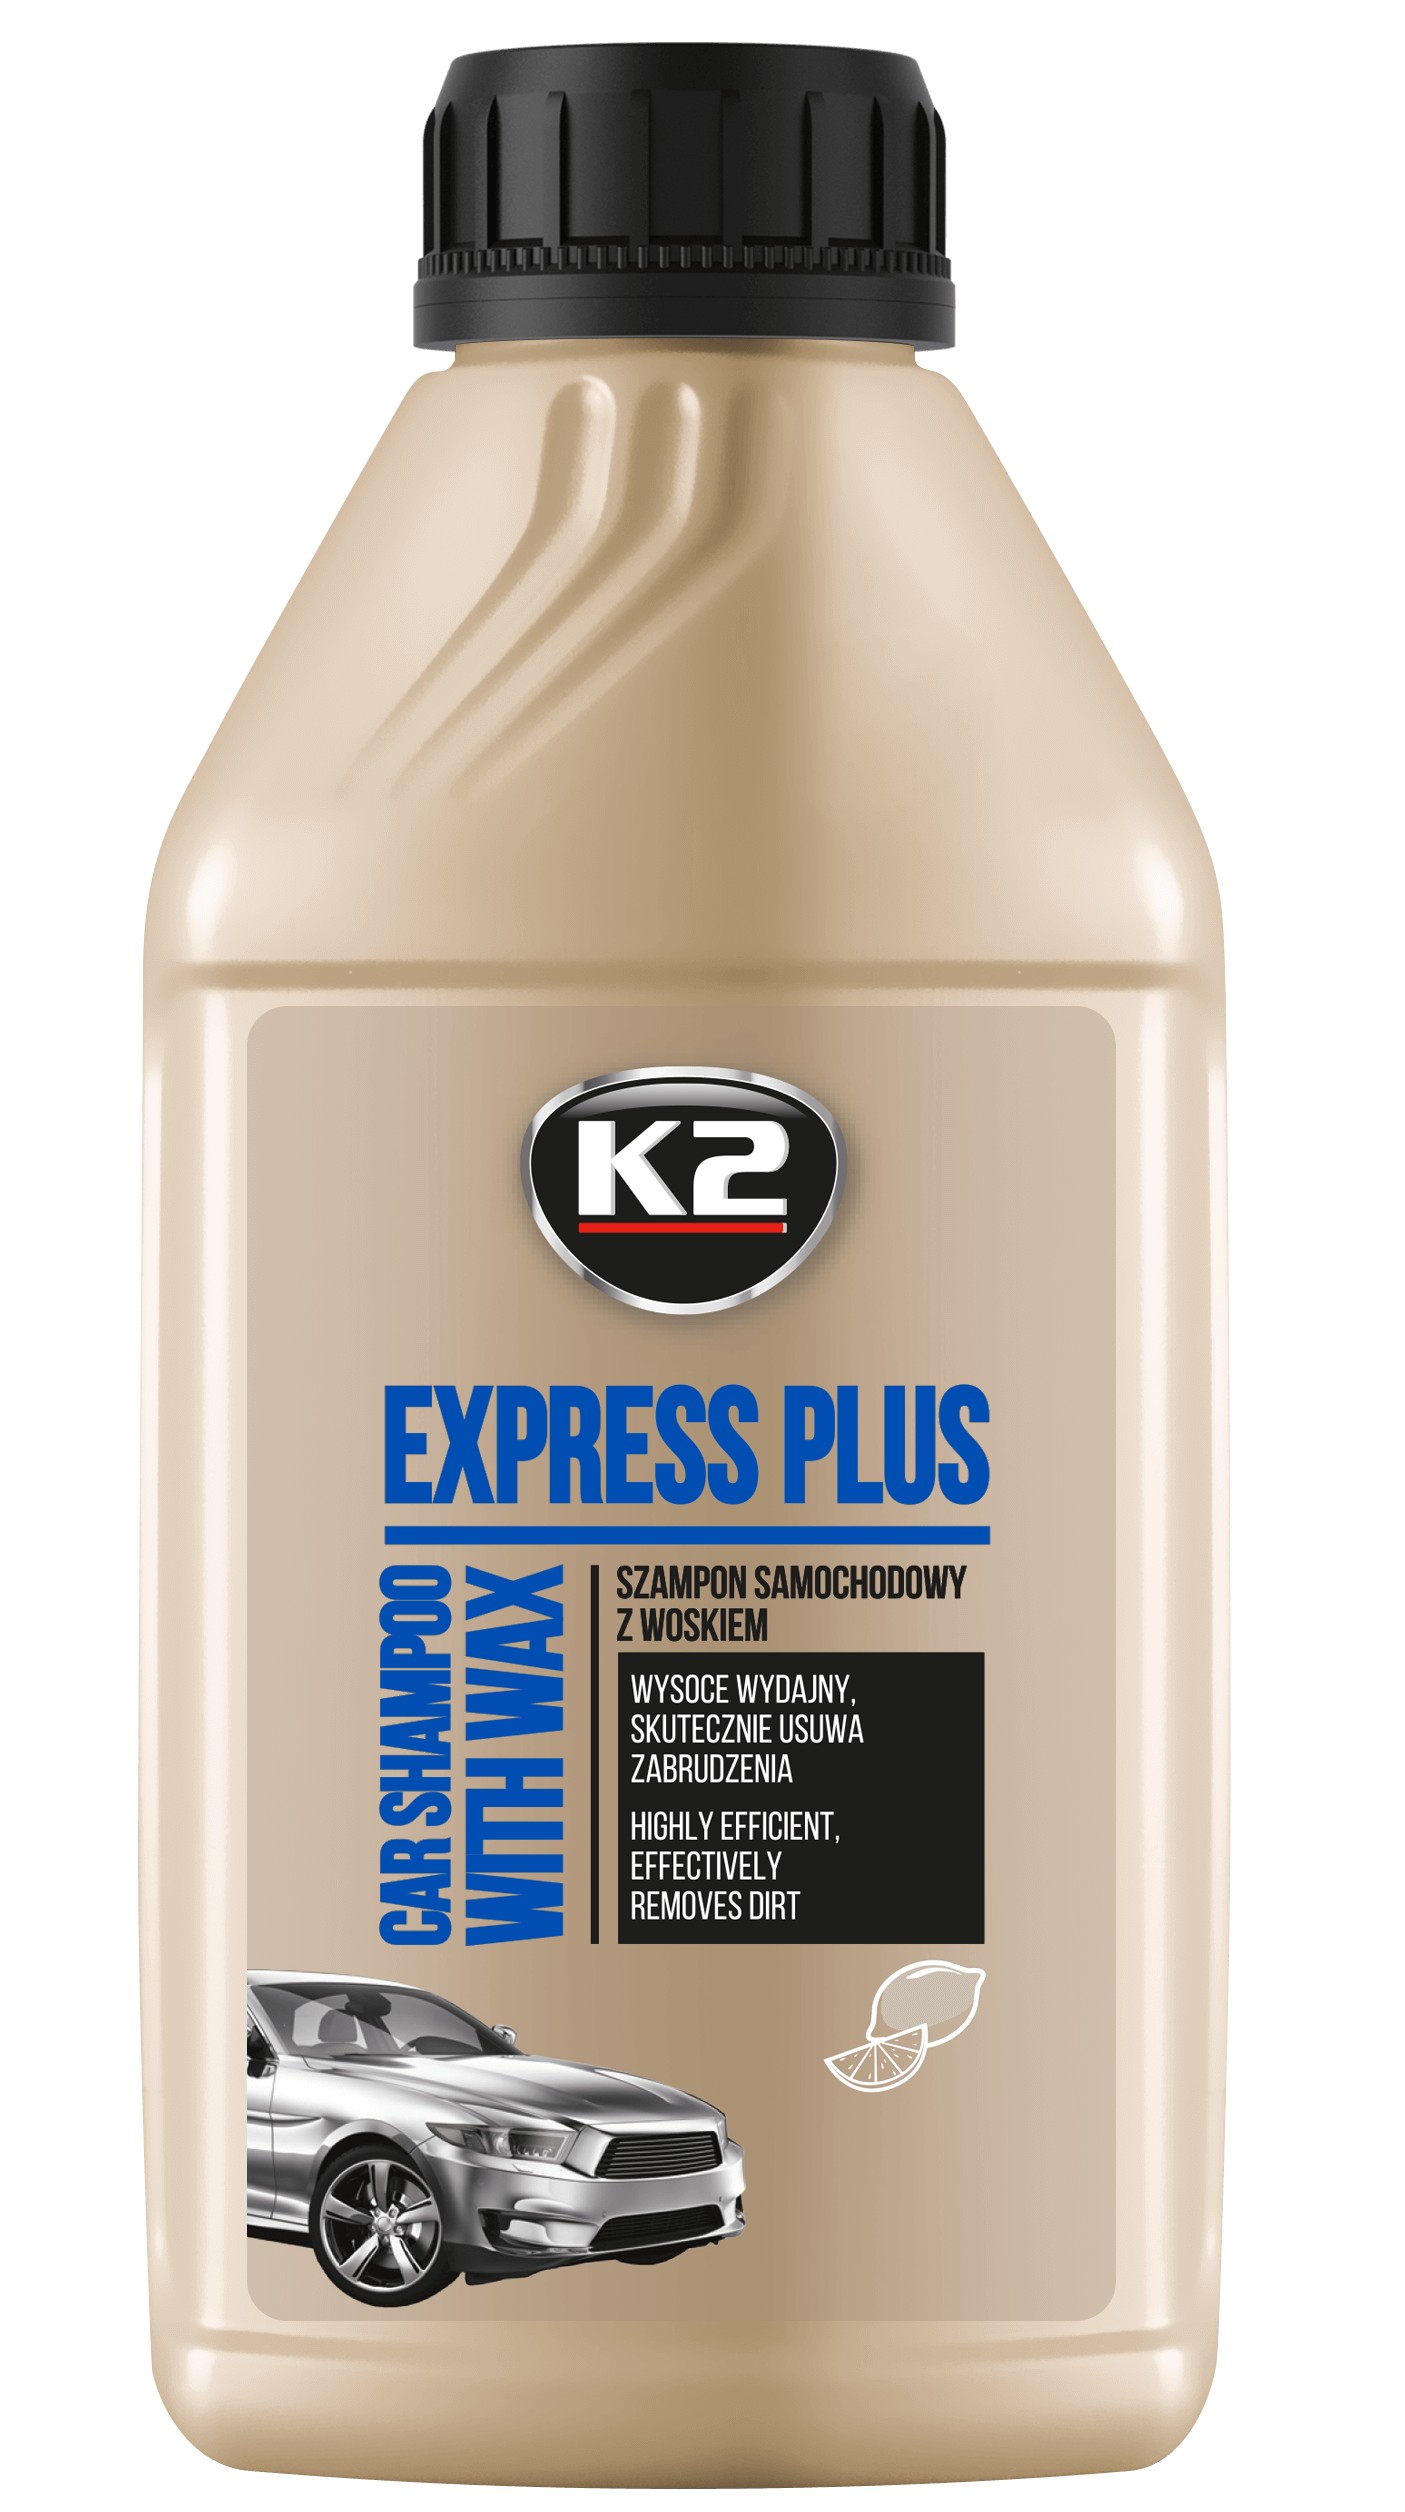 szampon z woskiem k2 karta charakterystyki